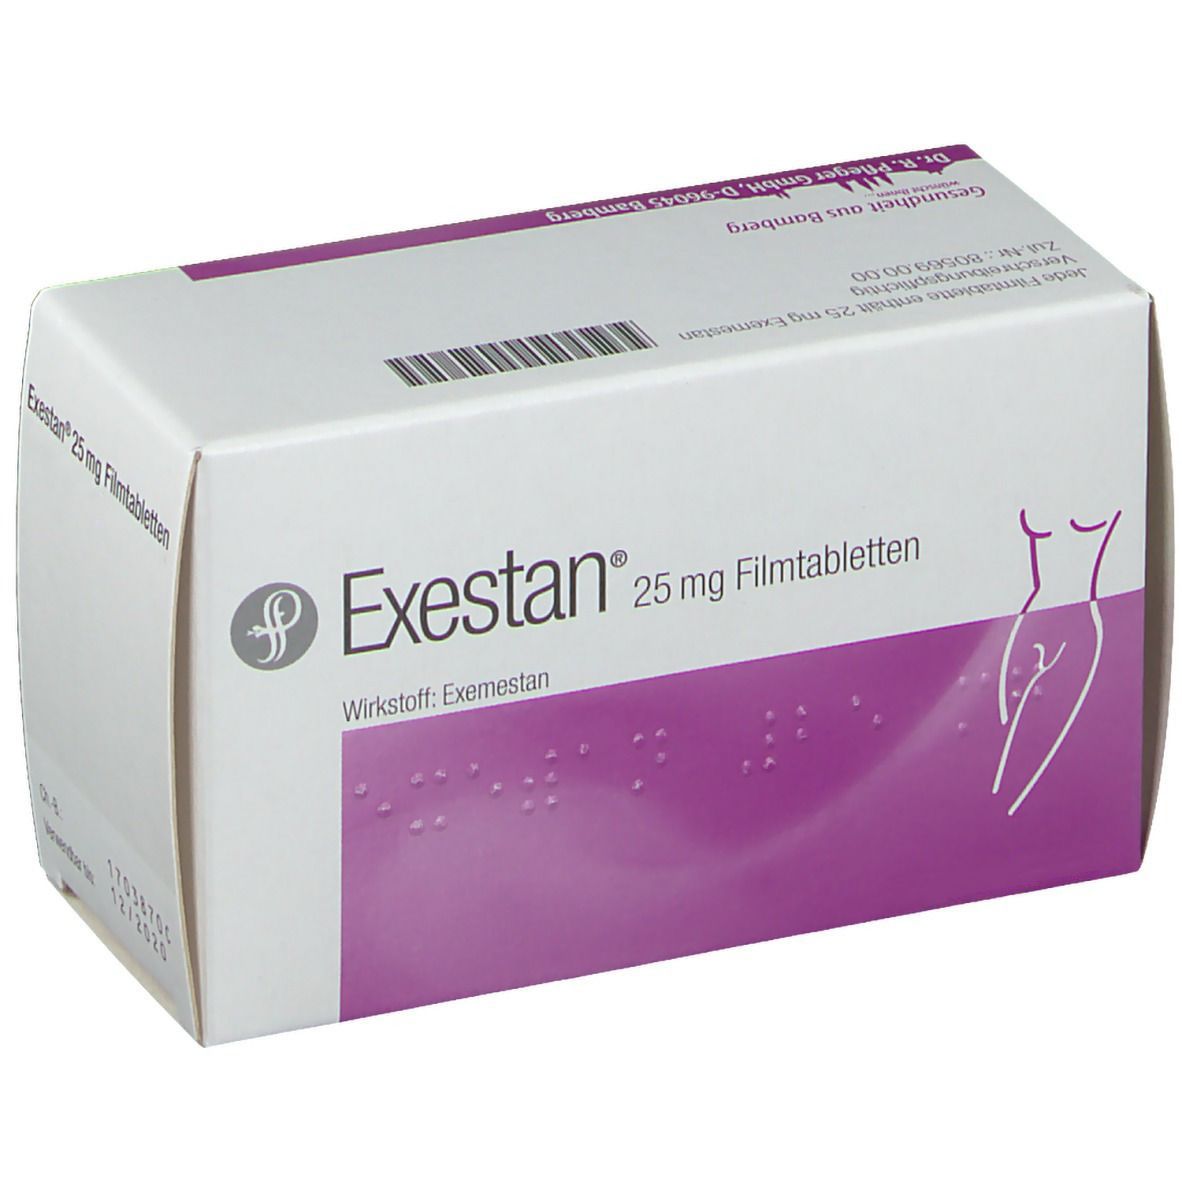 Exestan® 25 mg